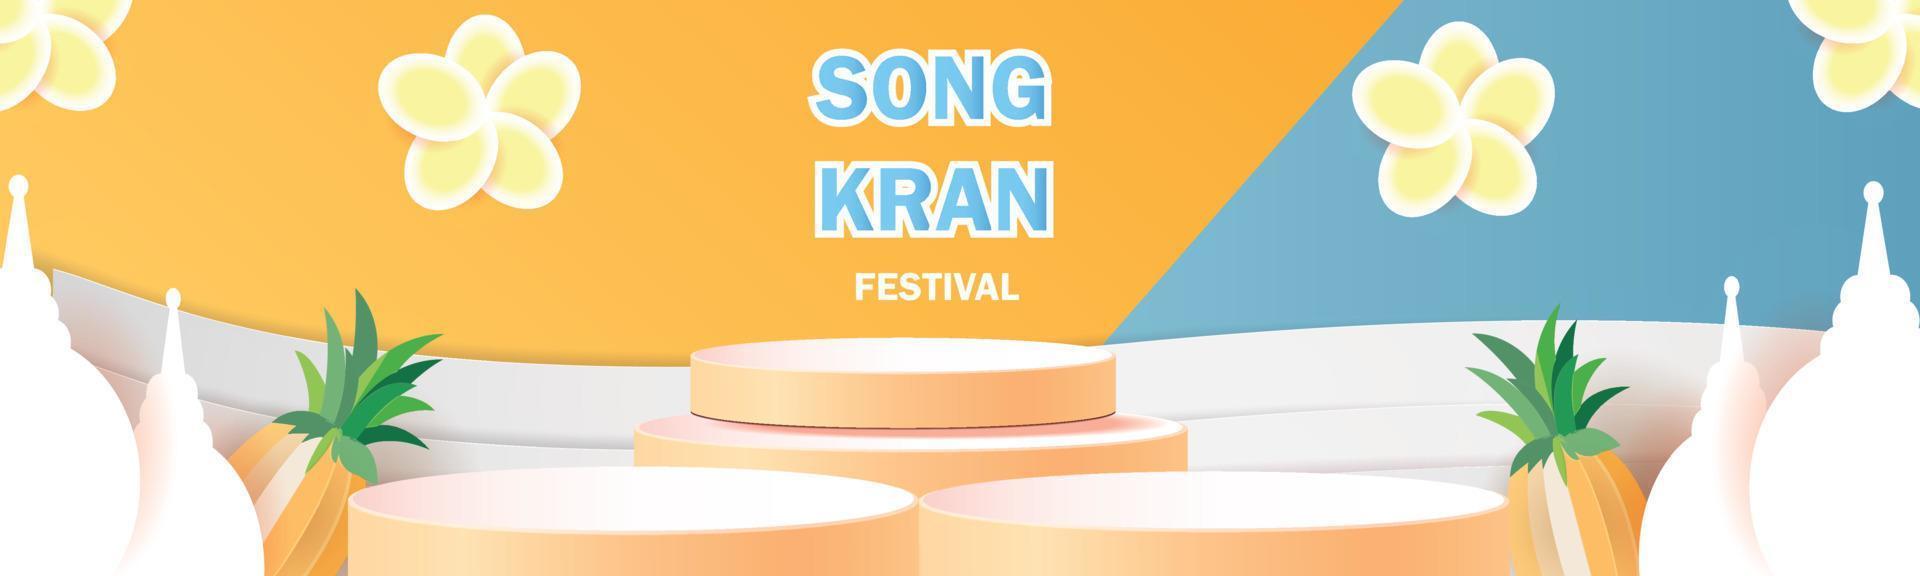 felice festival di songkran in tailandia podio vendita poster fiore vettoriale in estate aprile modello concetto